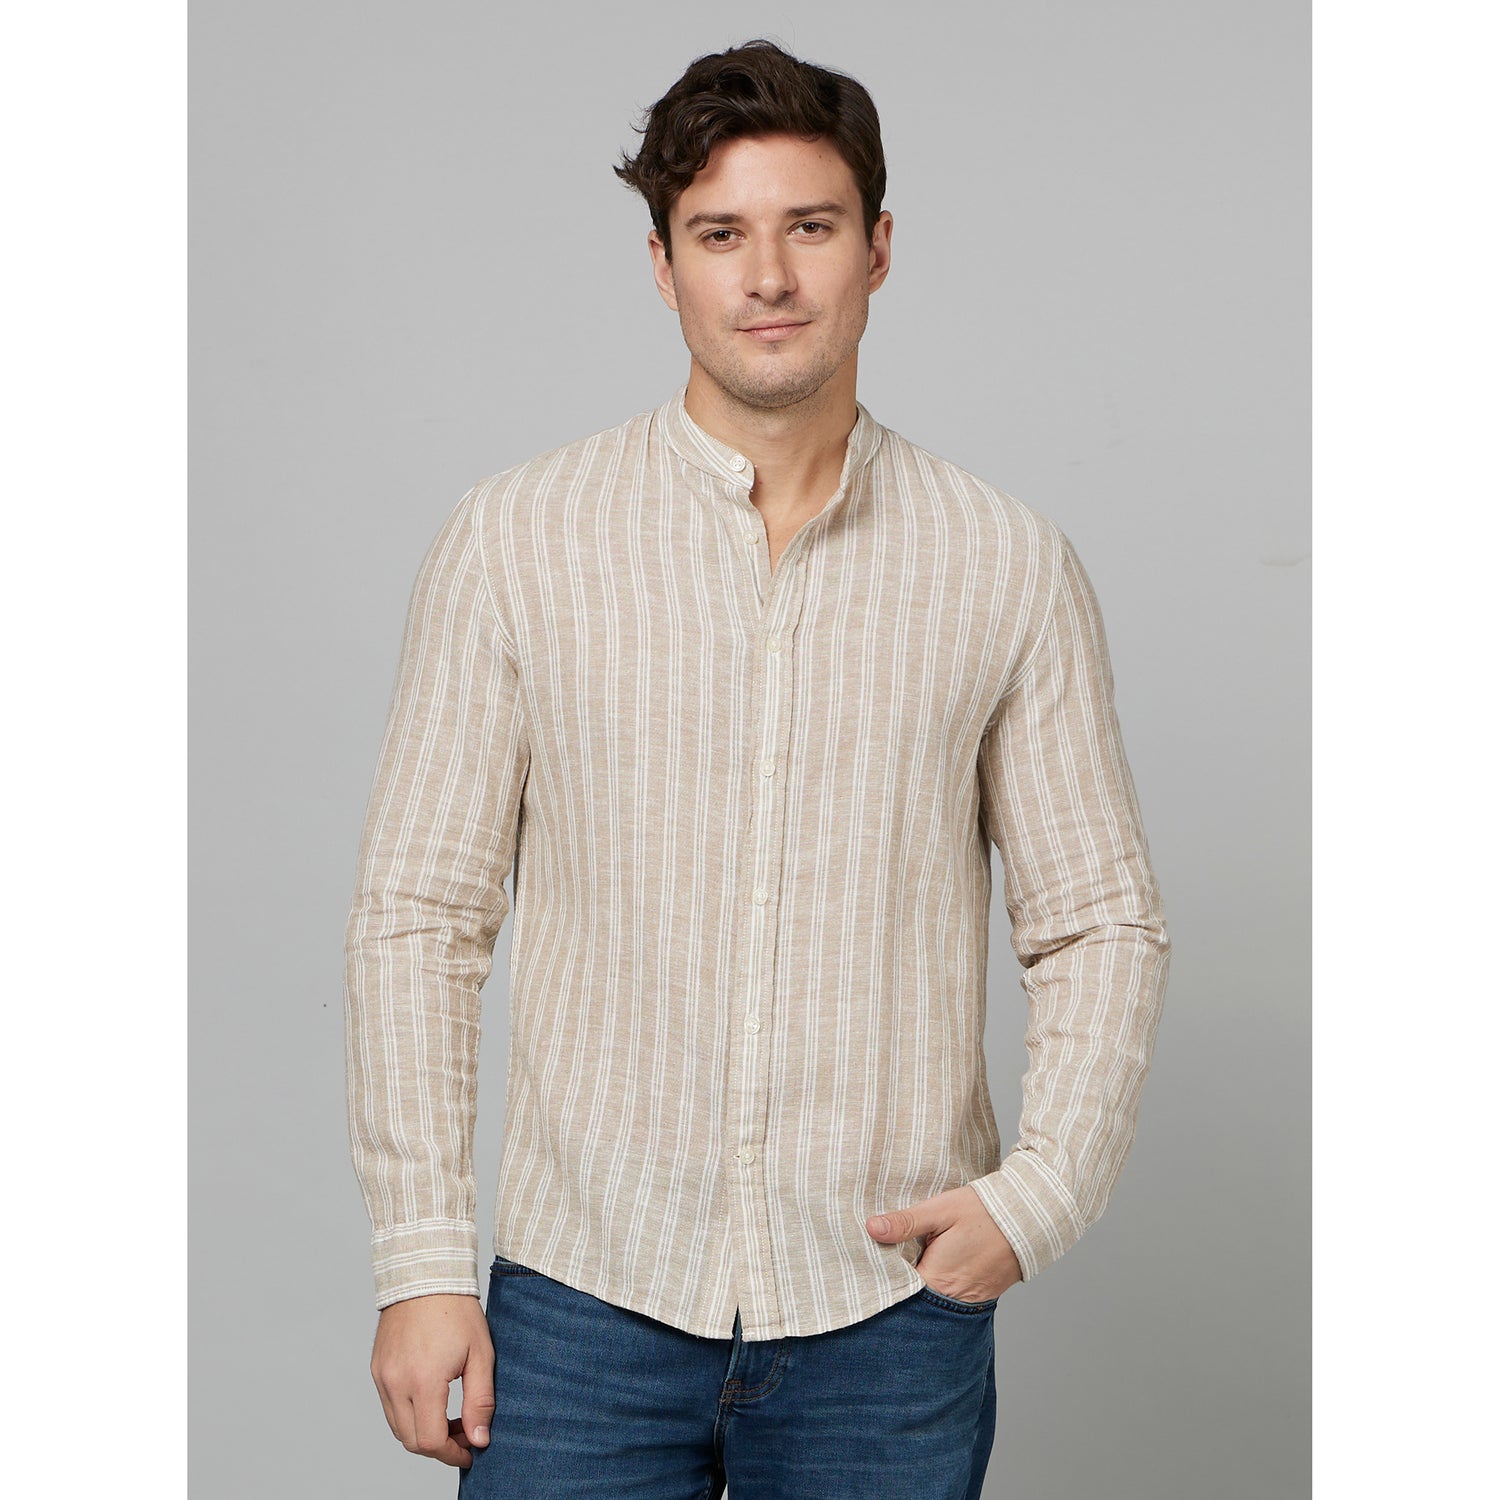 Beige Classic Striped Mandarin Collar Cotton Casual Shirt (DARAYLIN)